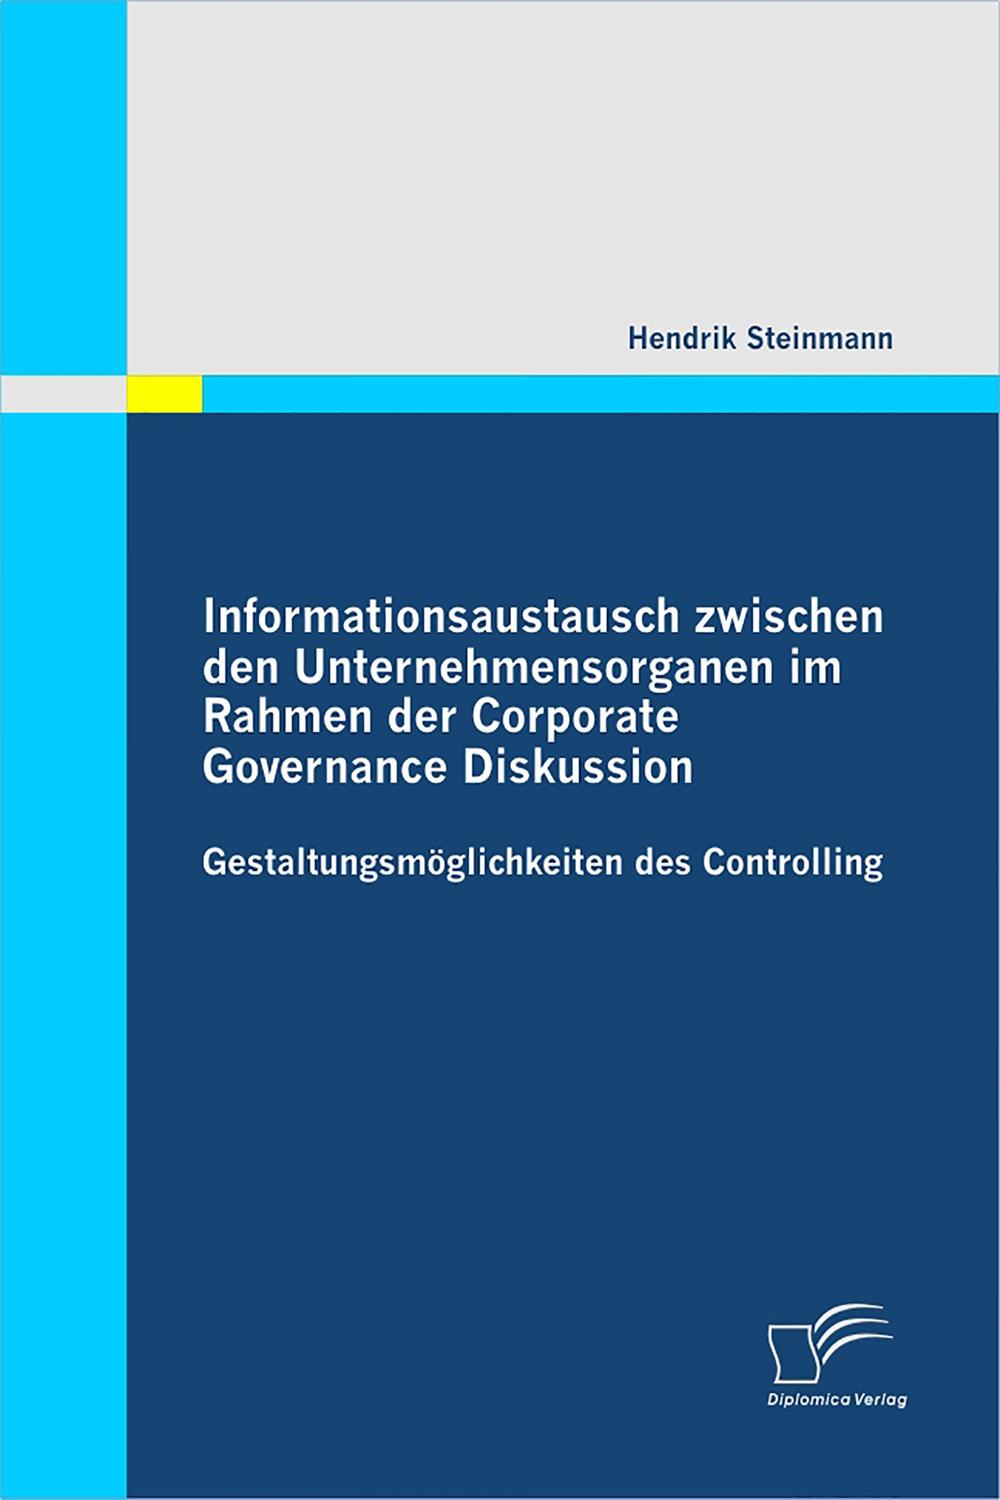 Informationsaustausch zwischen den Unternehmensorganen im Rahmen der Corporate Governance Diskussion: Gestaltungsmöglichkeiten des Controlling - Hendrik Steinmann